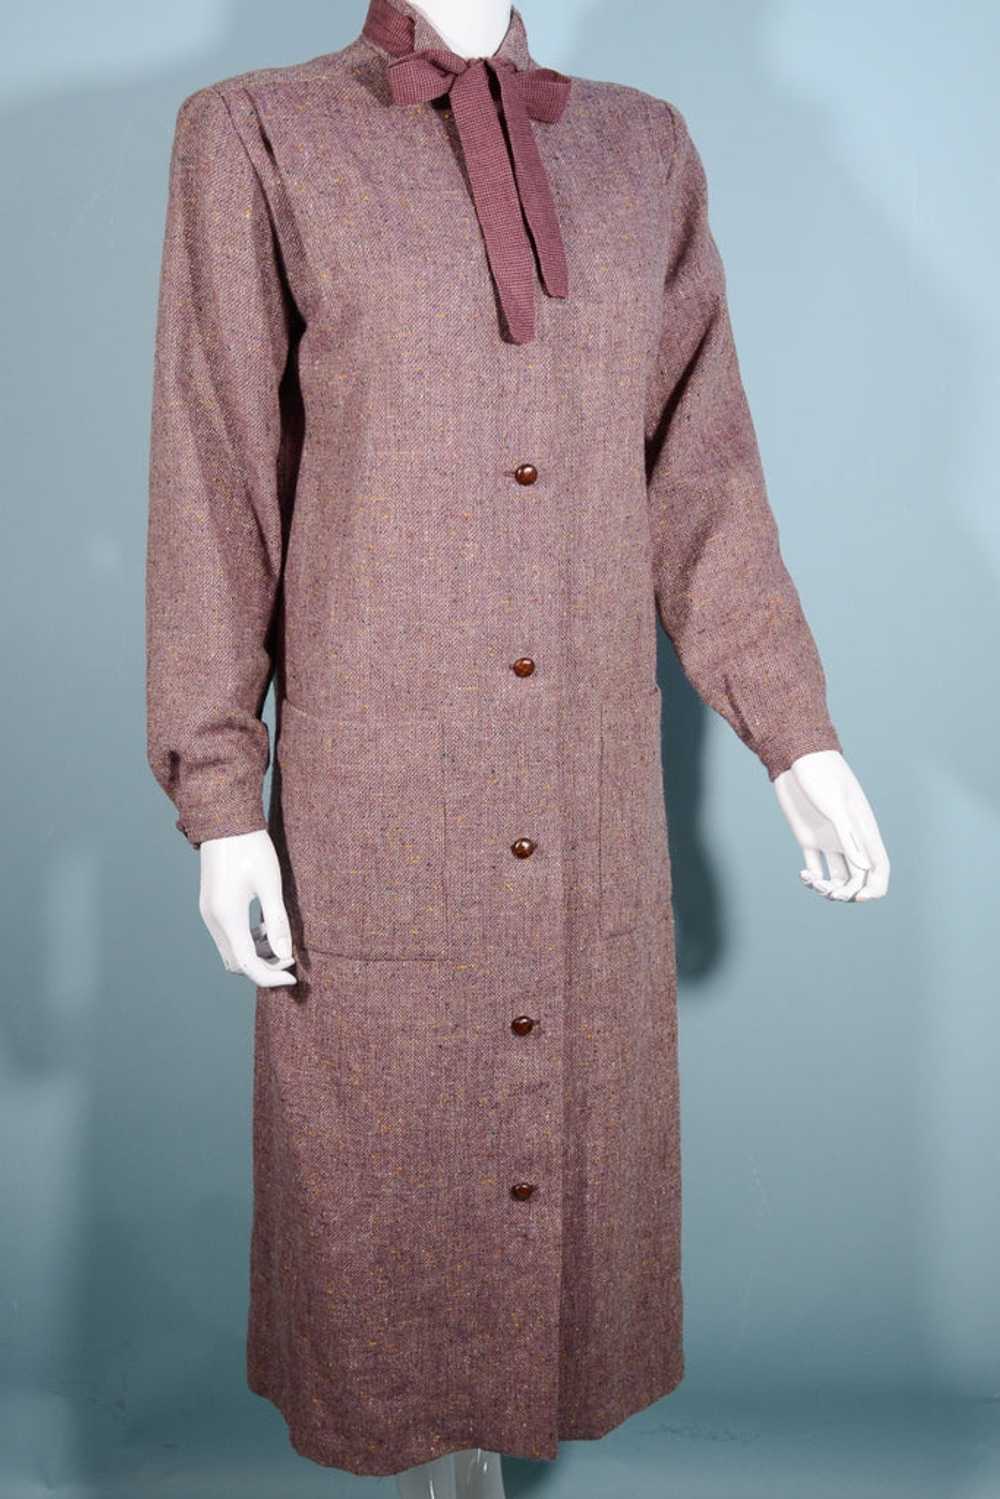 Vintage 70s Tweed Overcoat + Tie Neckline, Dark A… - image 8